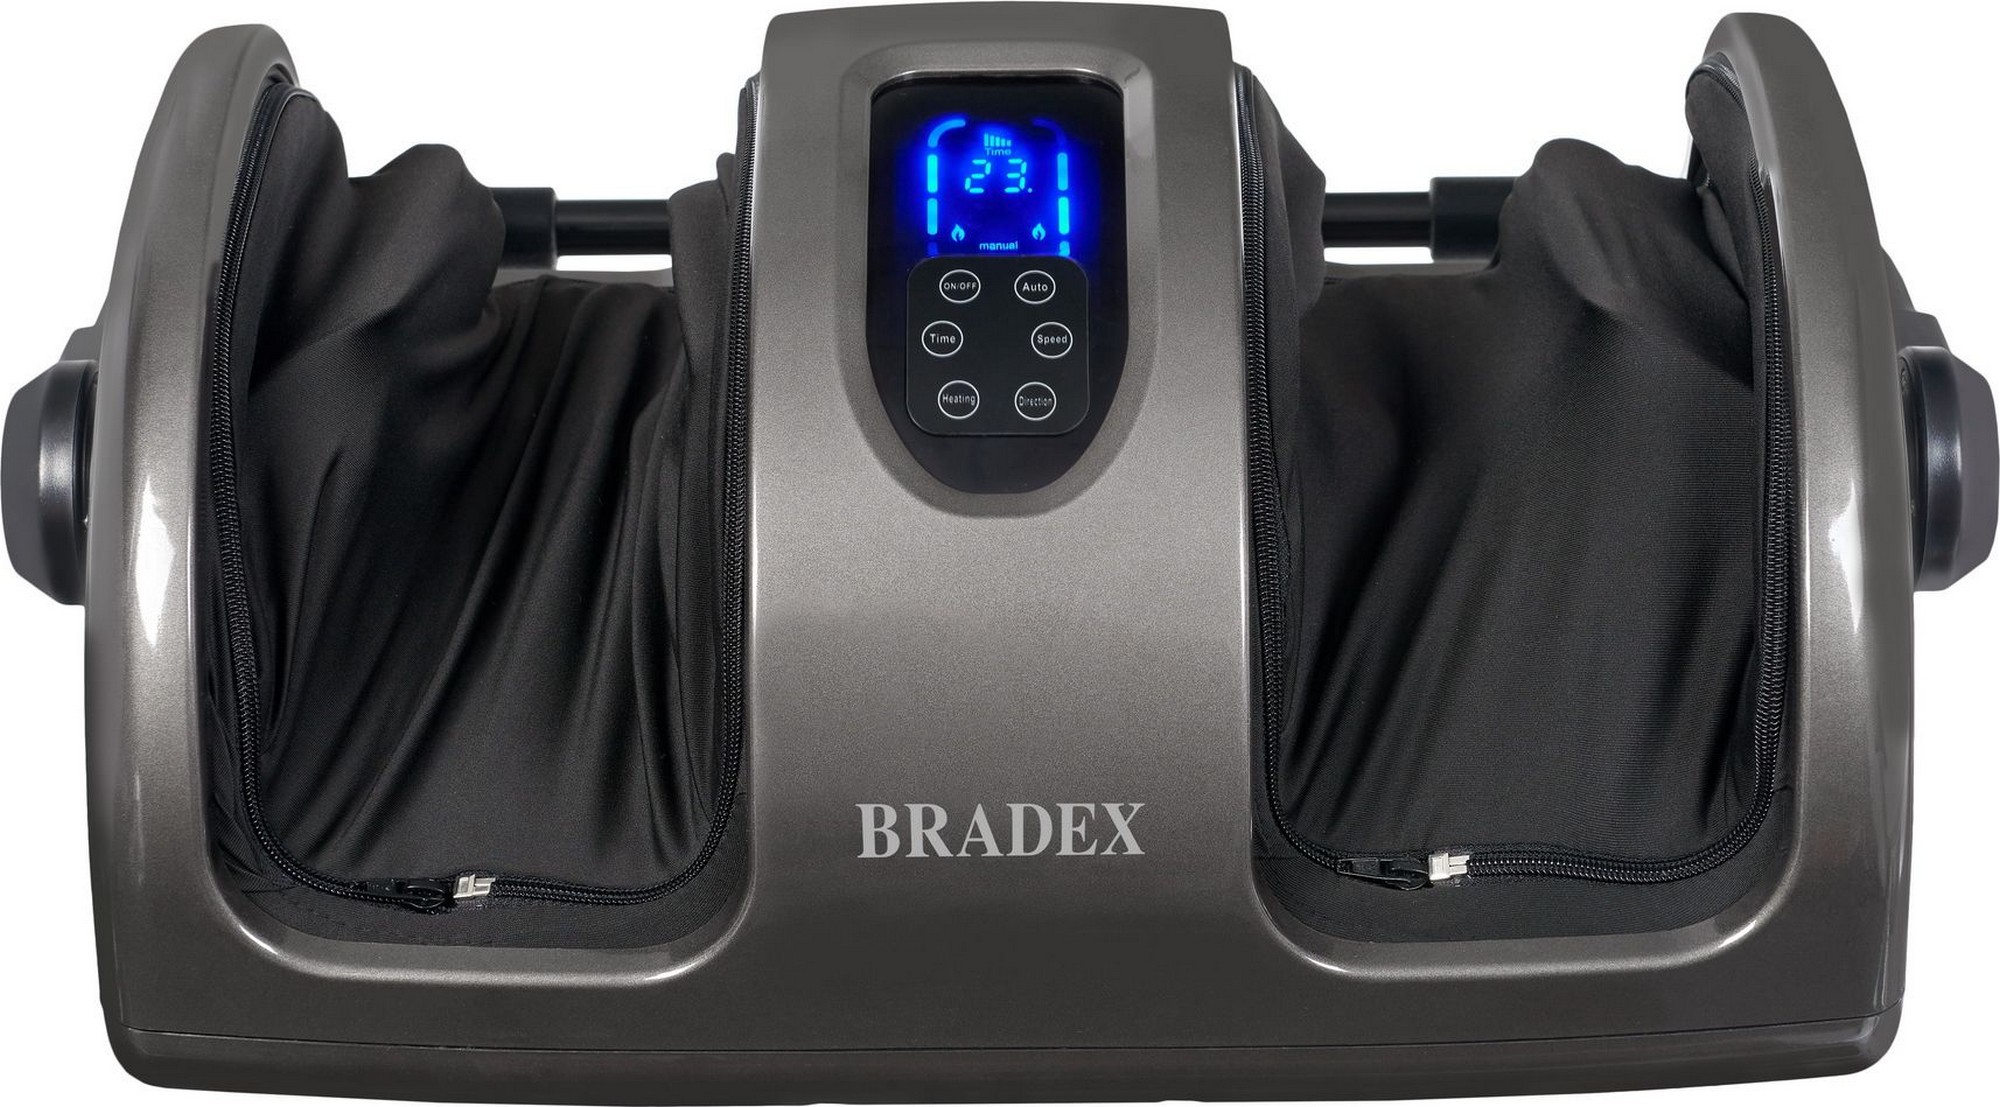      Bradex   KZ 0562 